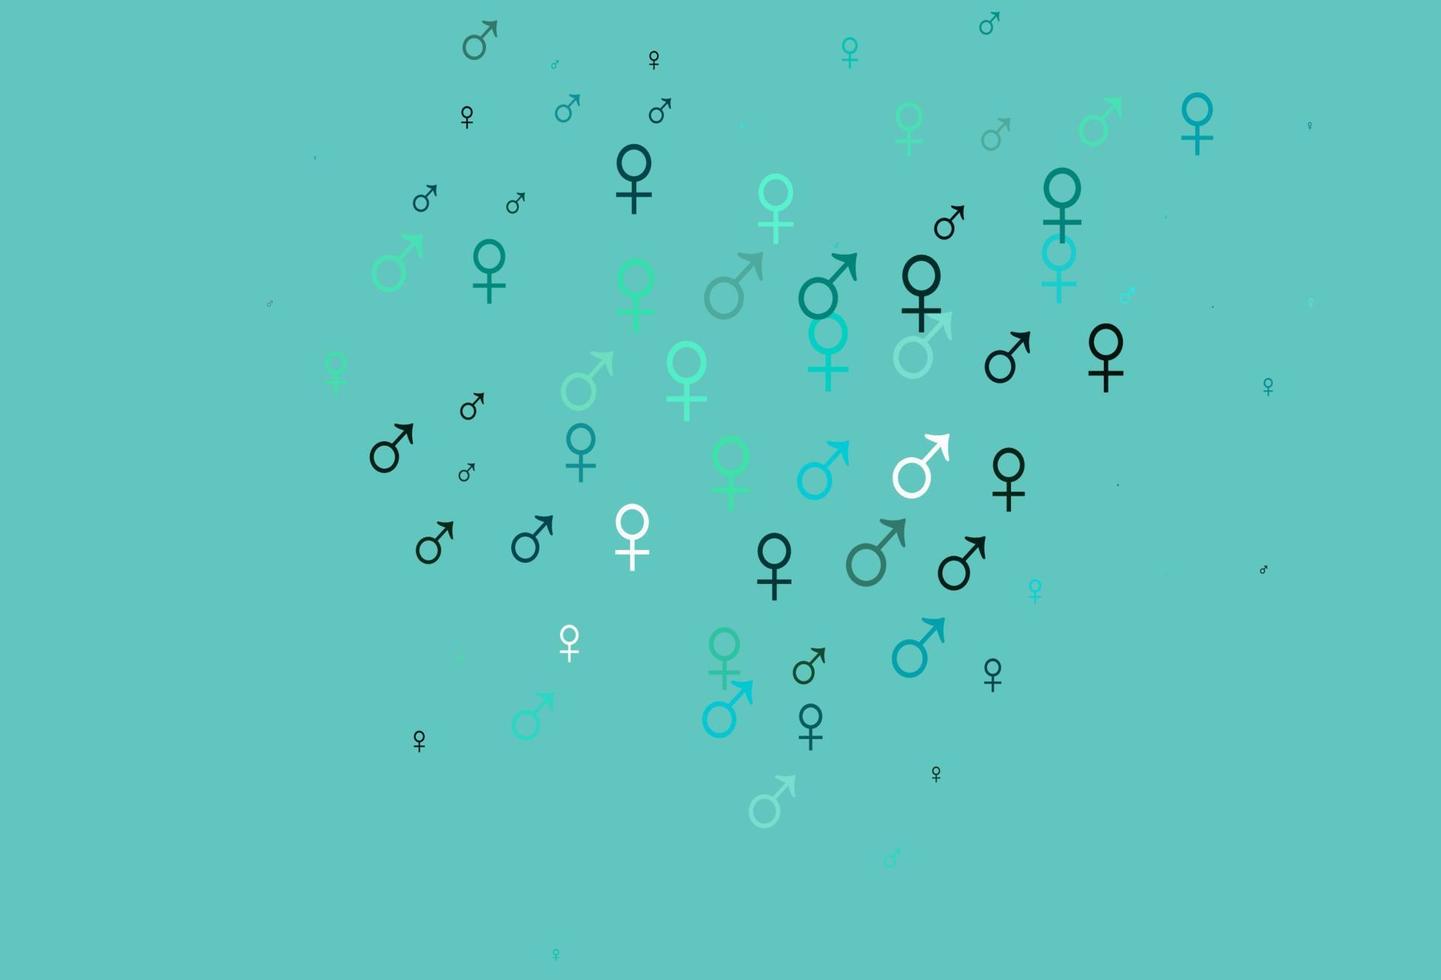 struttura vettoriale azzurra e verde con icone maschili e femminili.